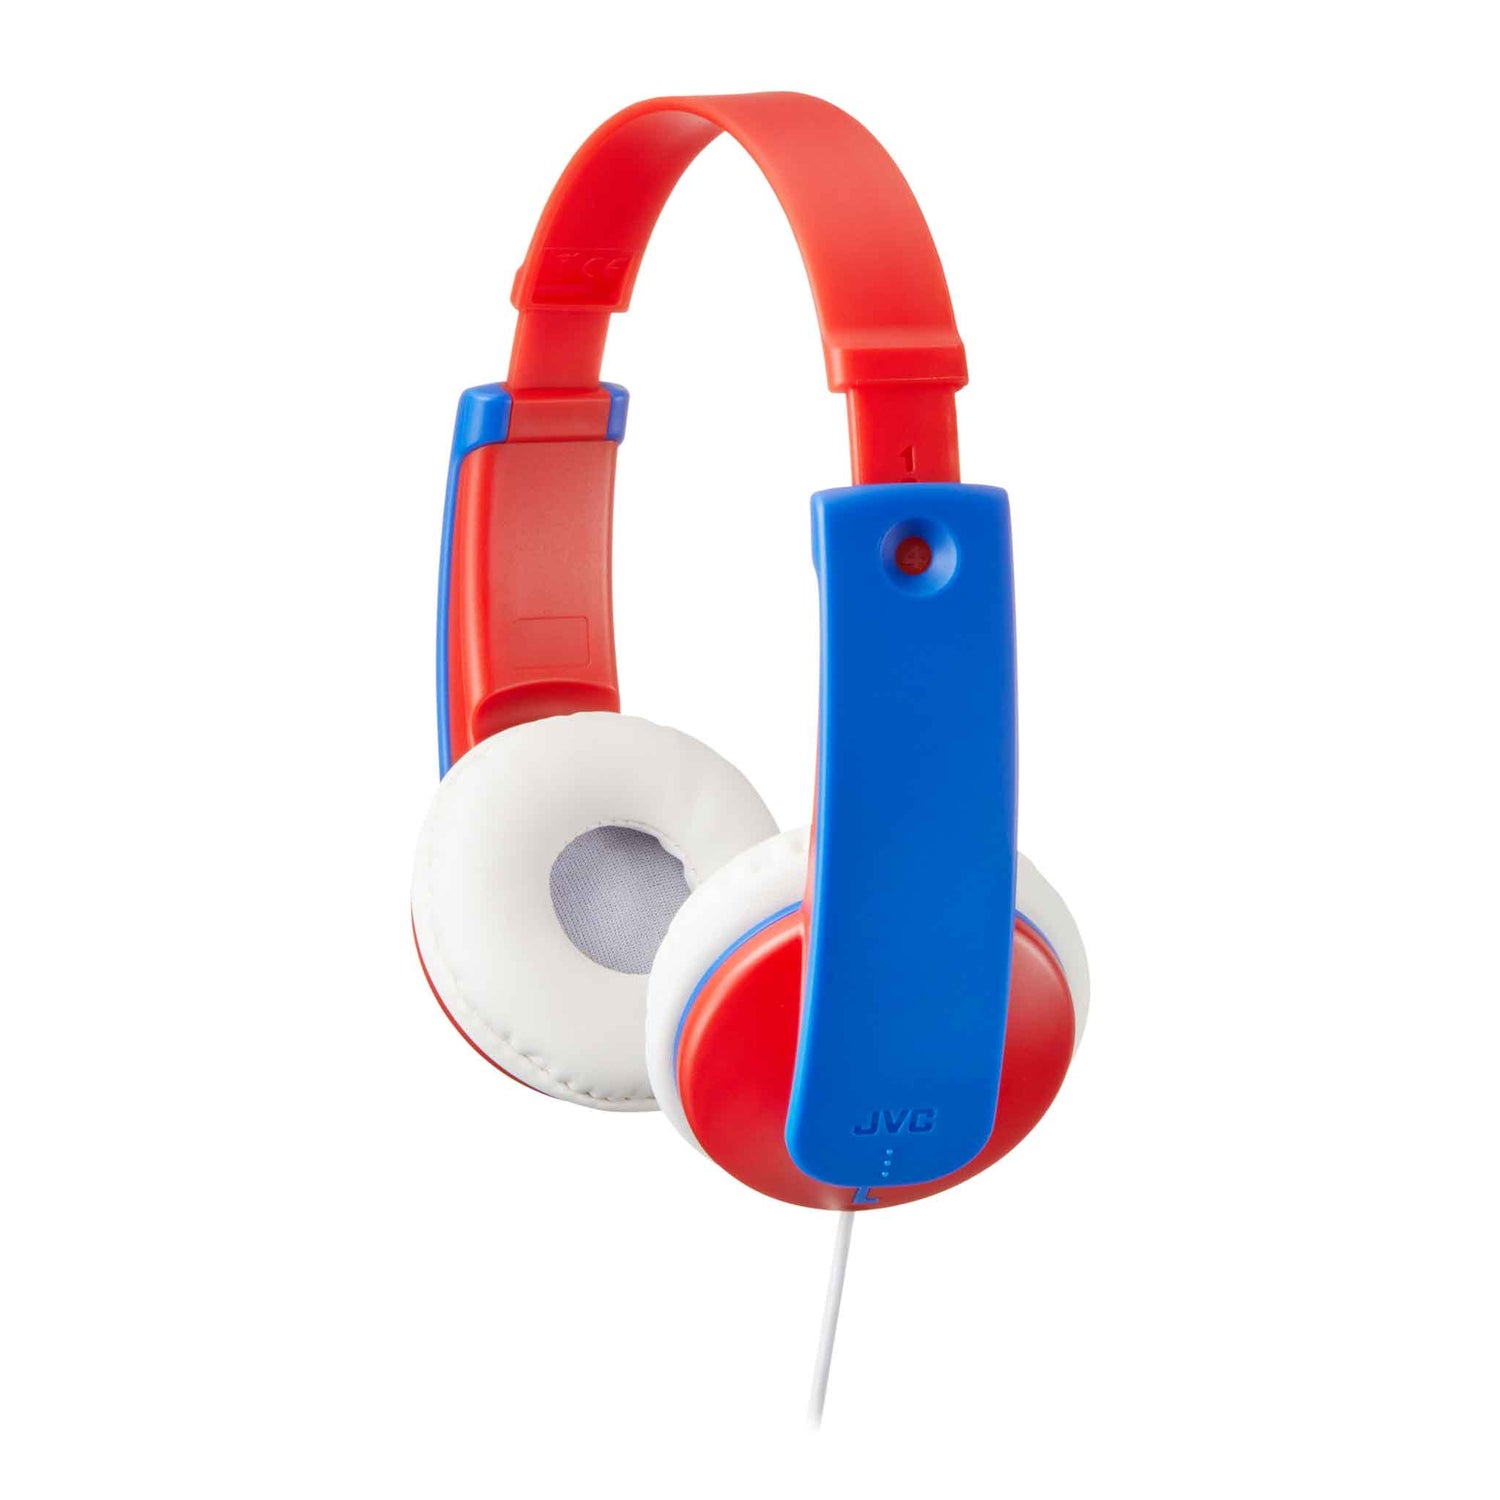 HA-KD7-R wired kids headphones